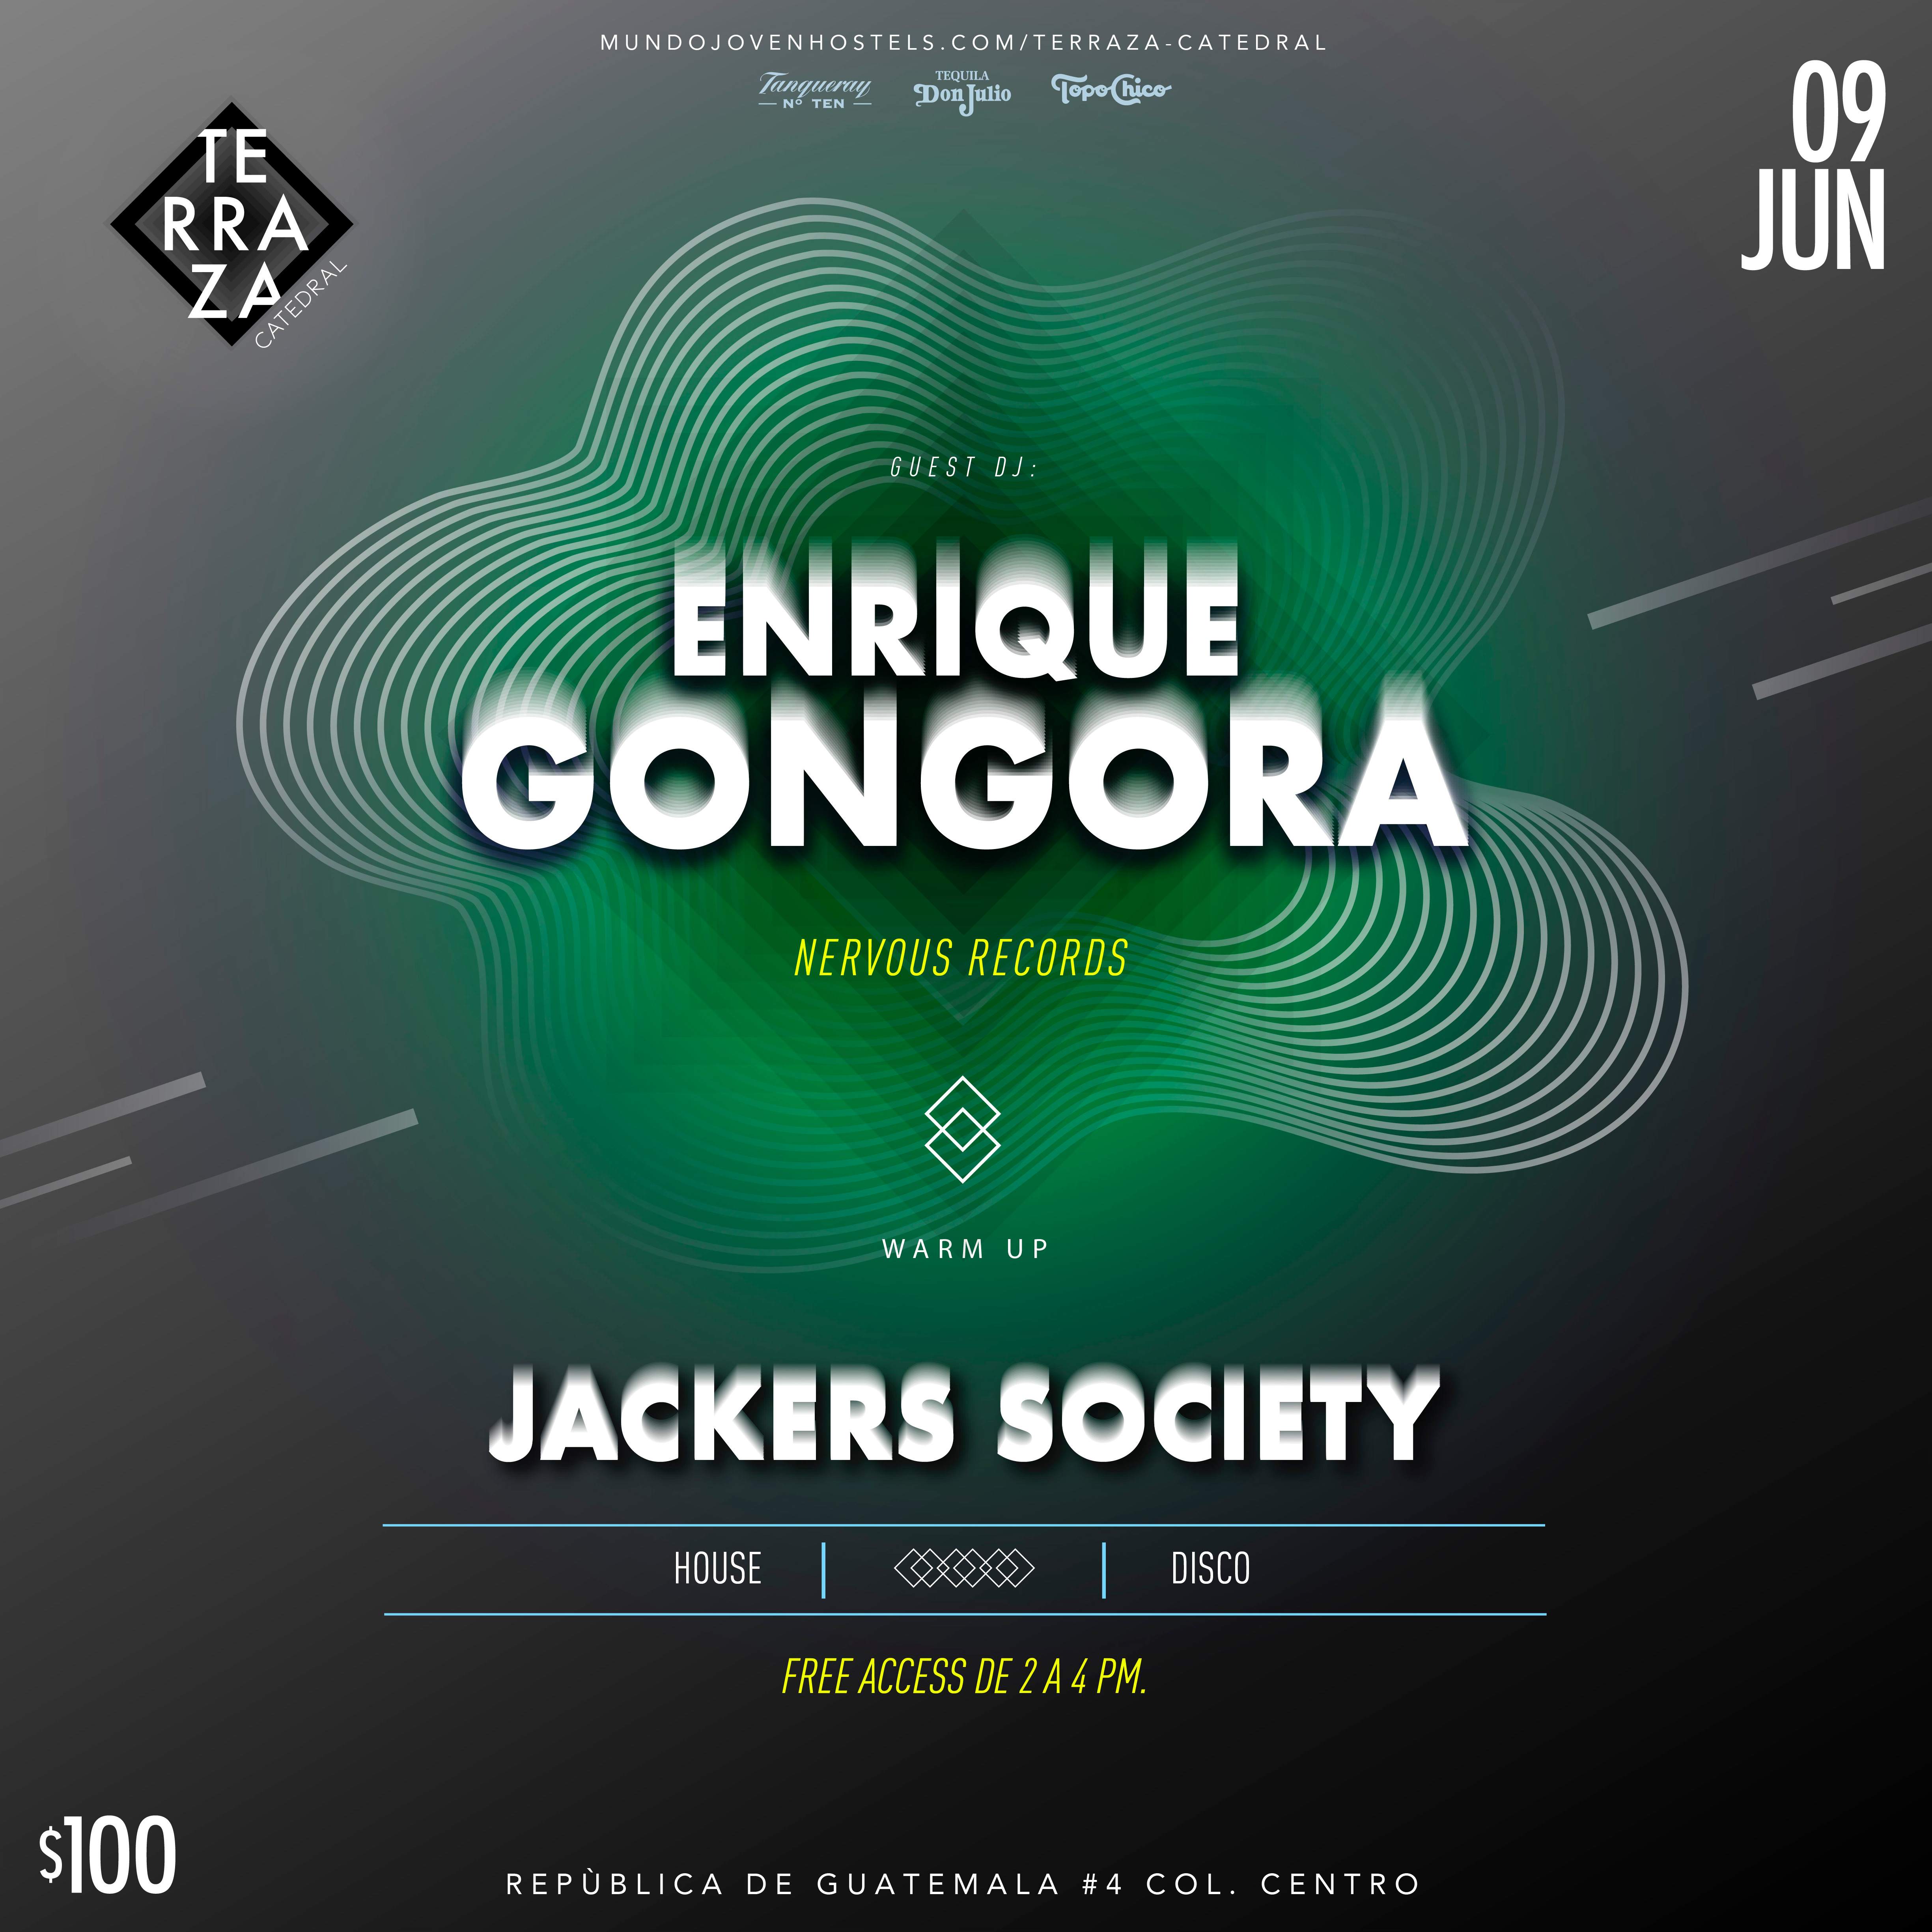 Enrique Góngora + Jackers Society - フライヤー表